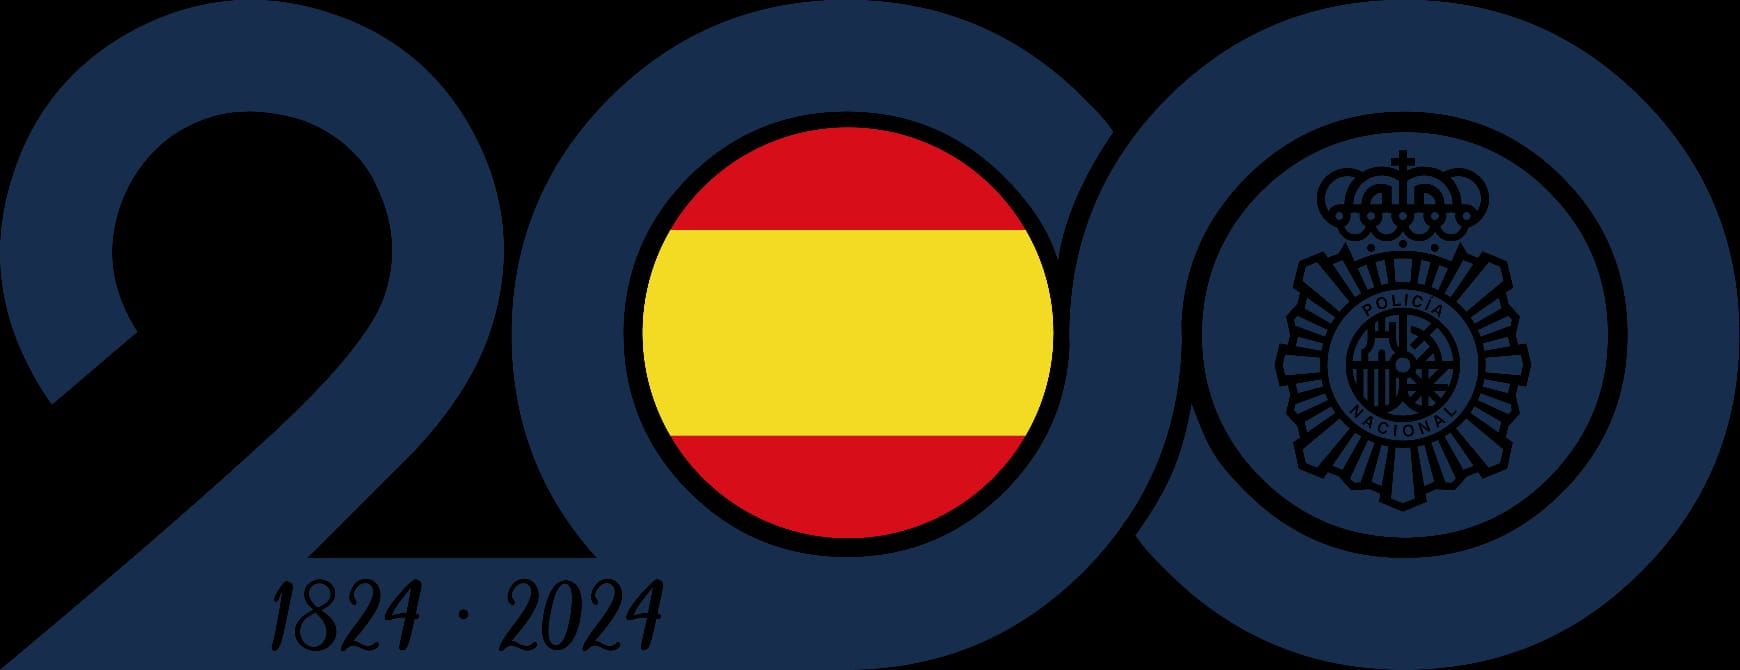 Logotipo conmemorativo del bicentenario de la Policía Nacional